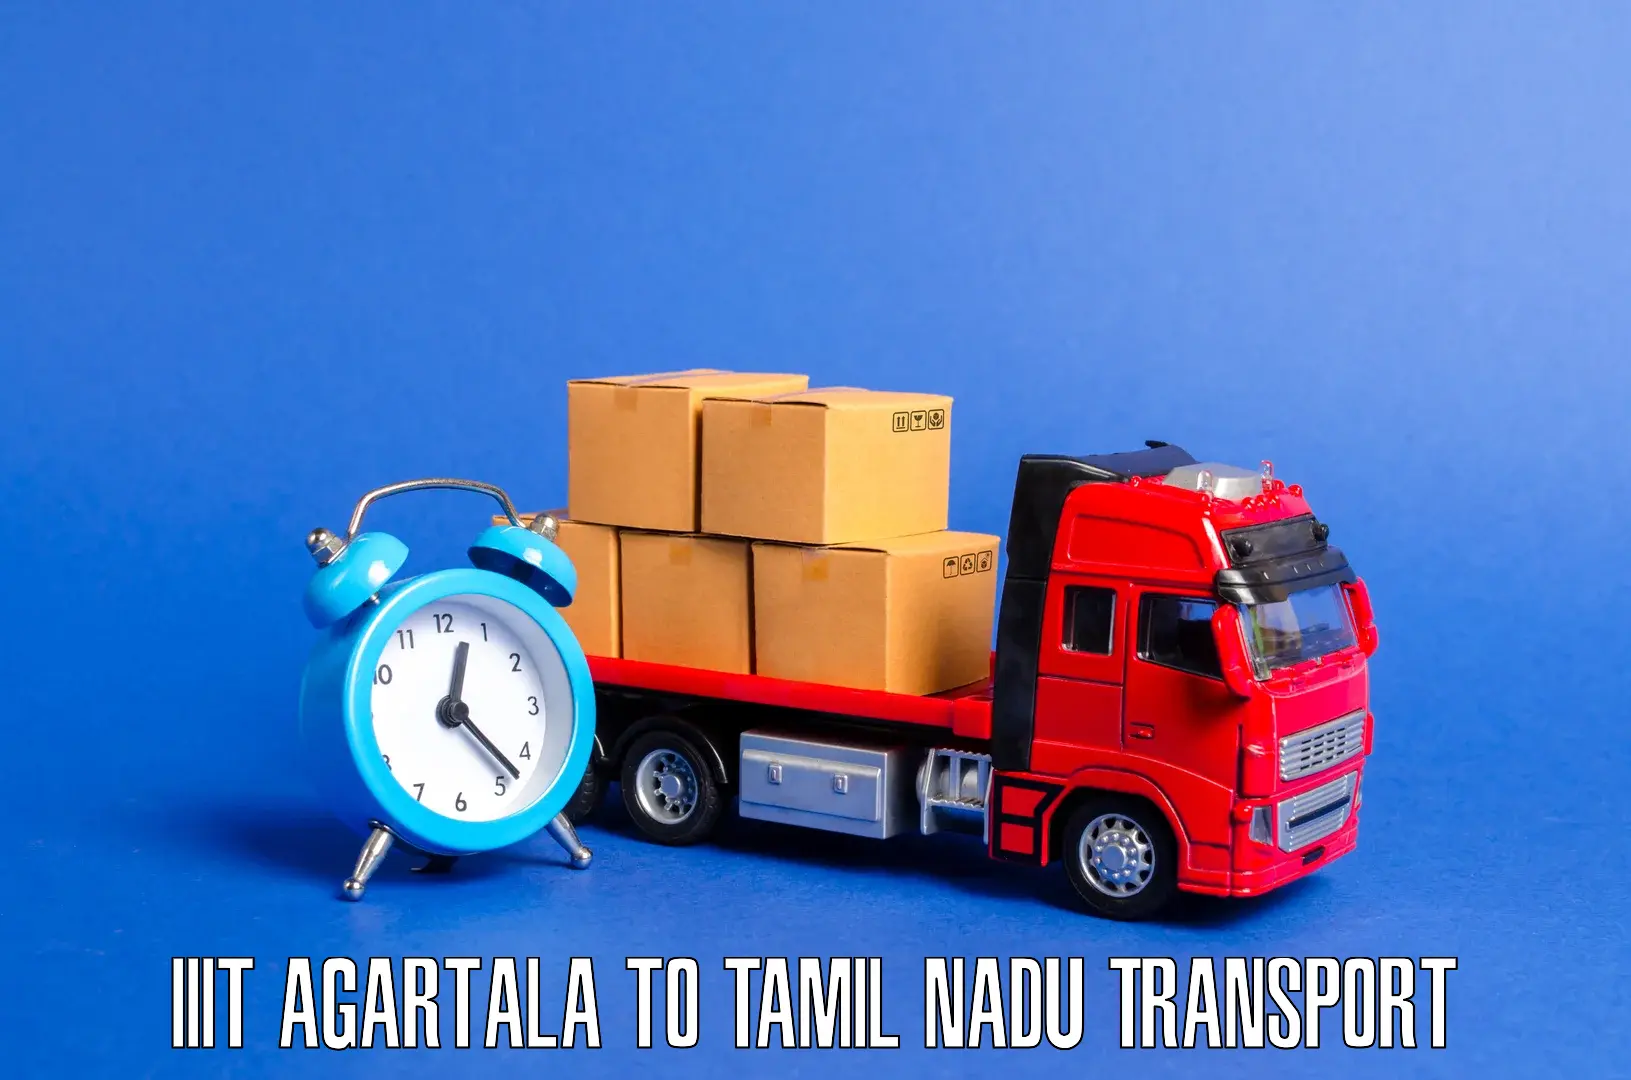 Cycle transportation service IIIT Agartala to Kallakurichi